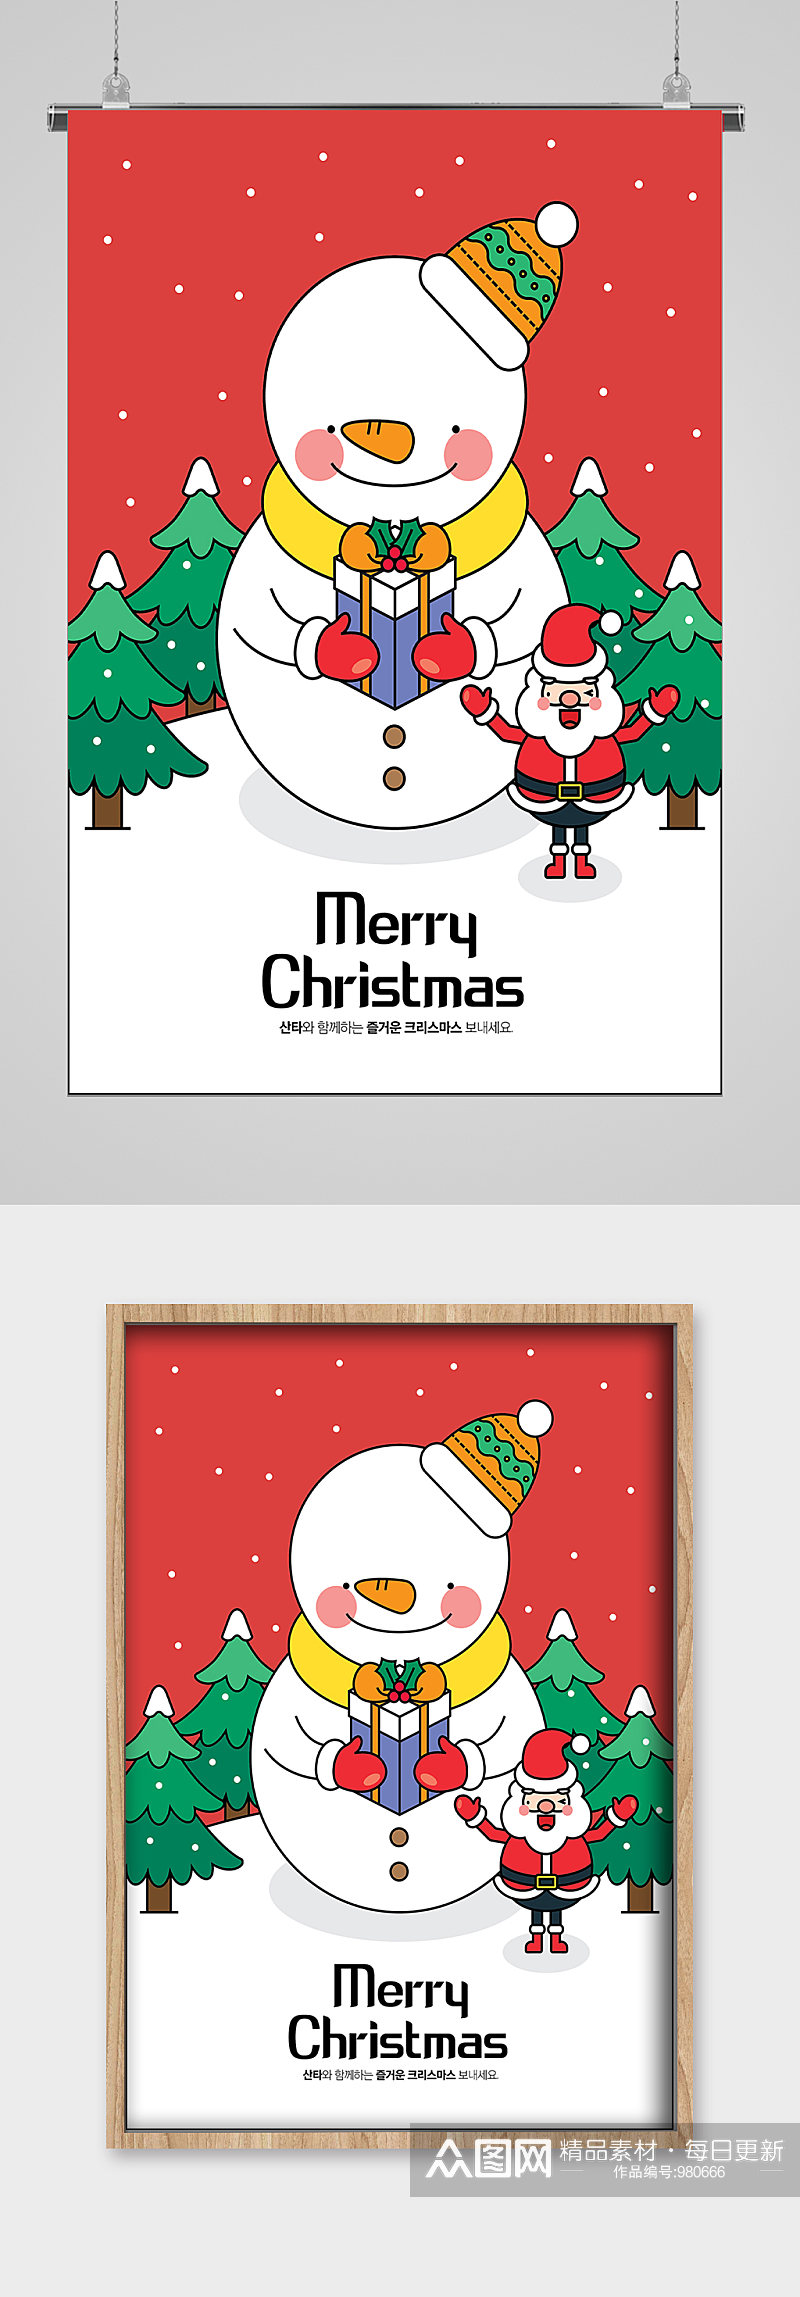 圣诞雪人线描插画宣传素材